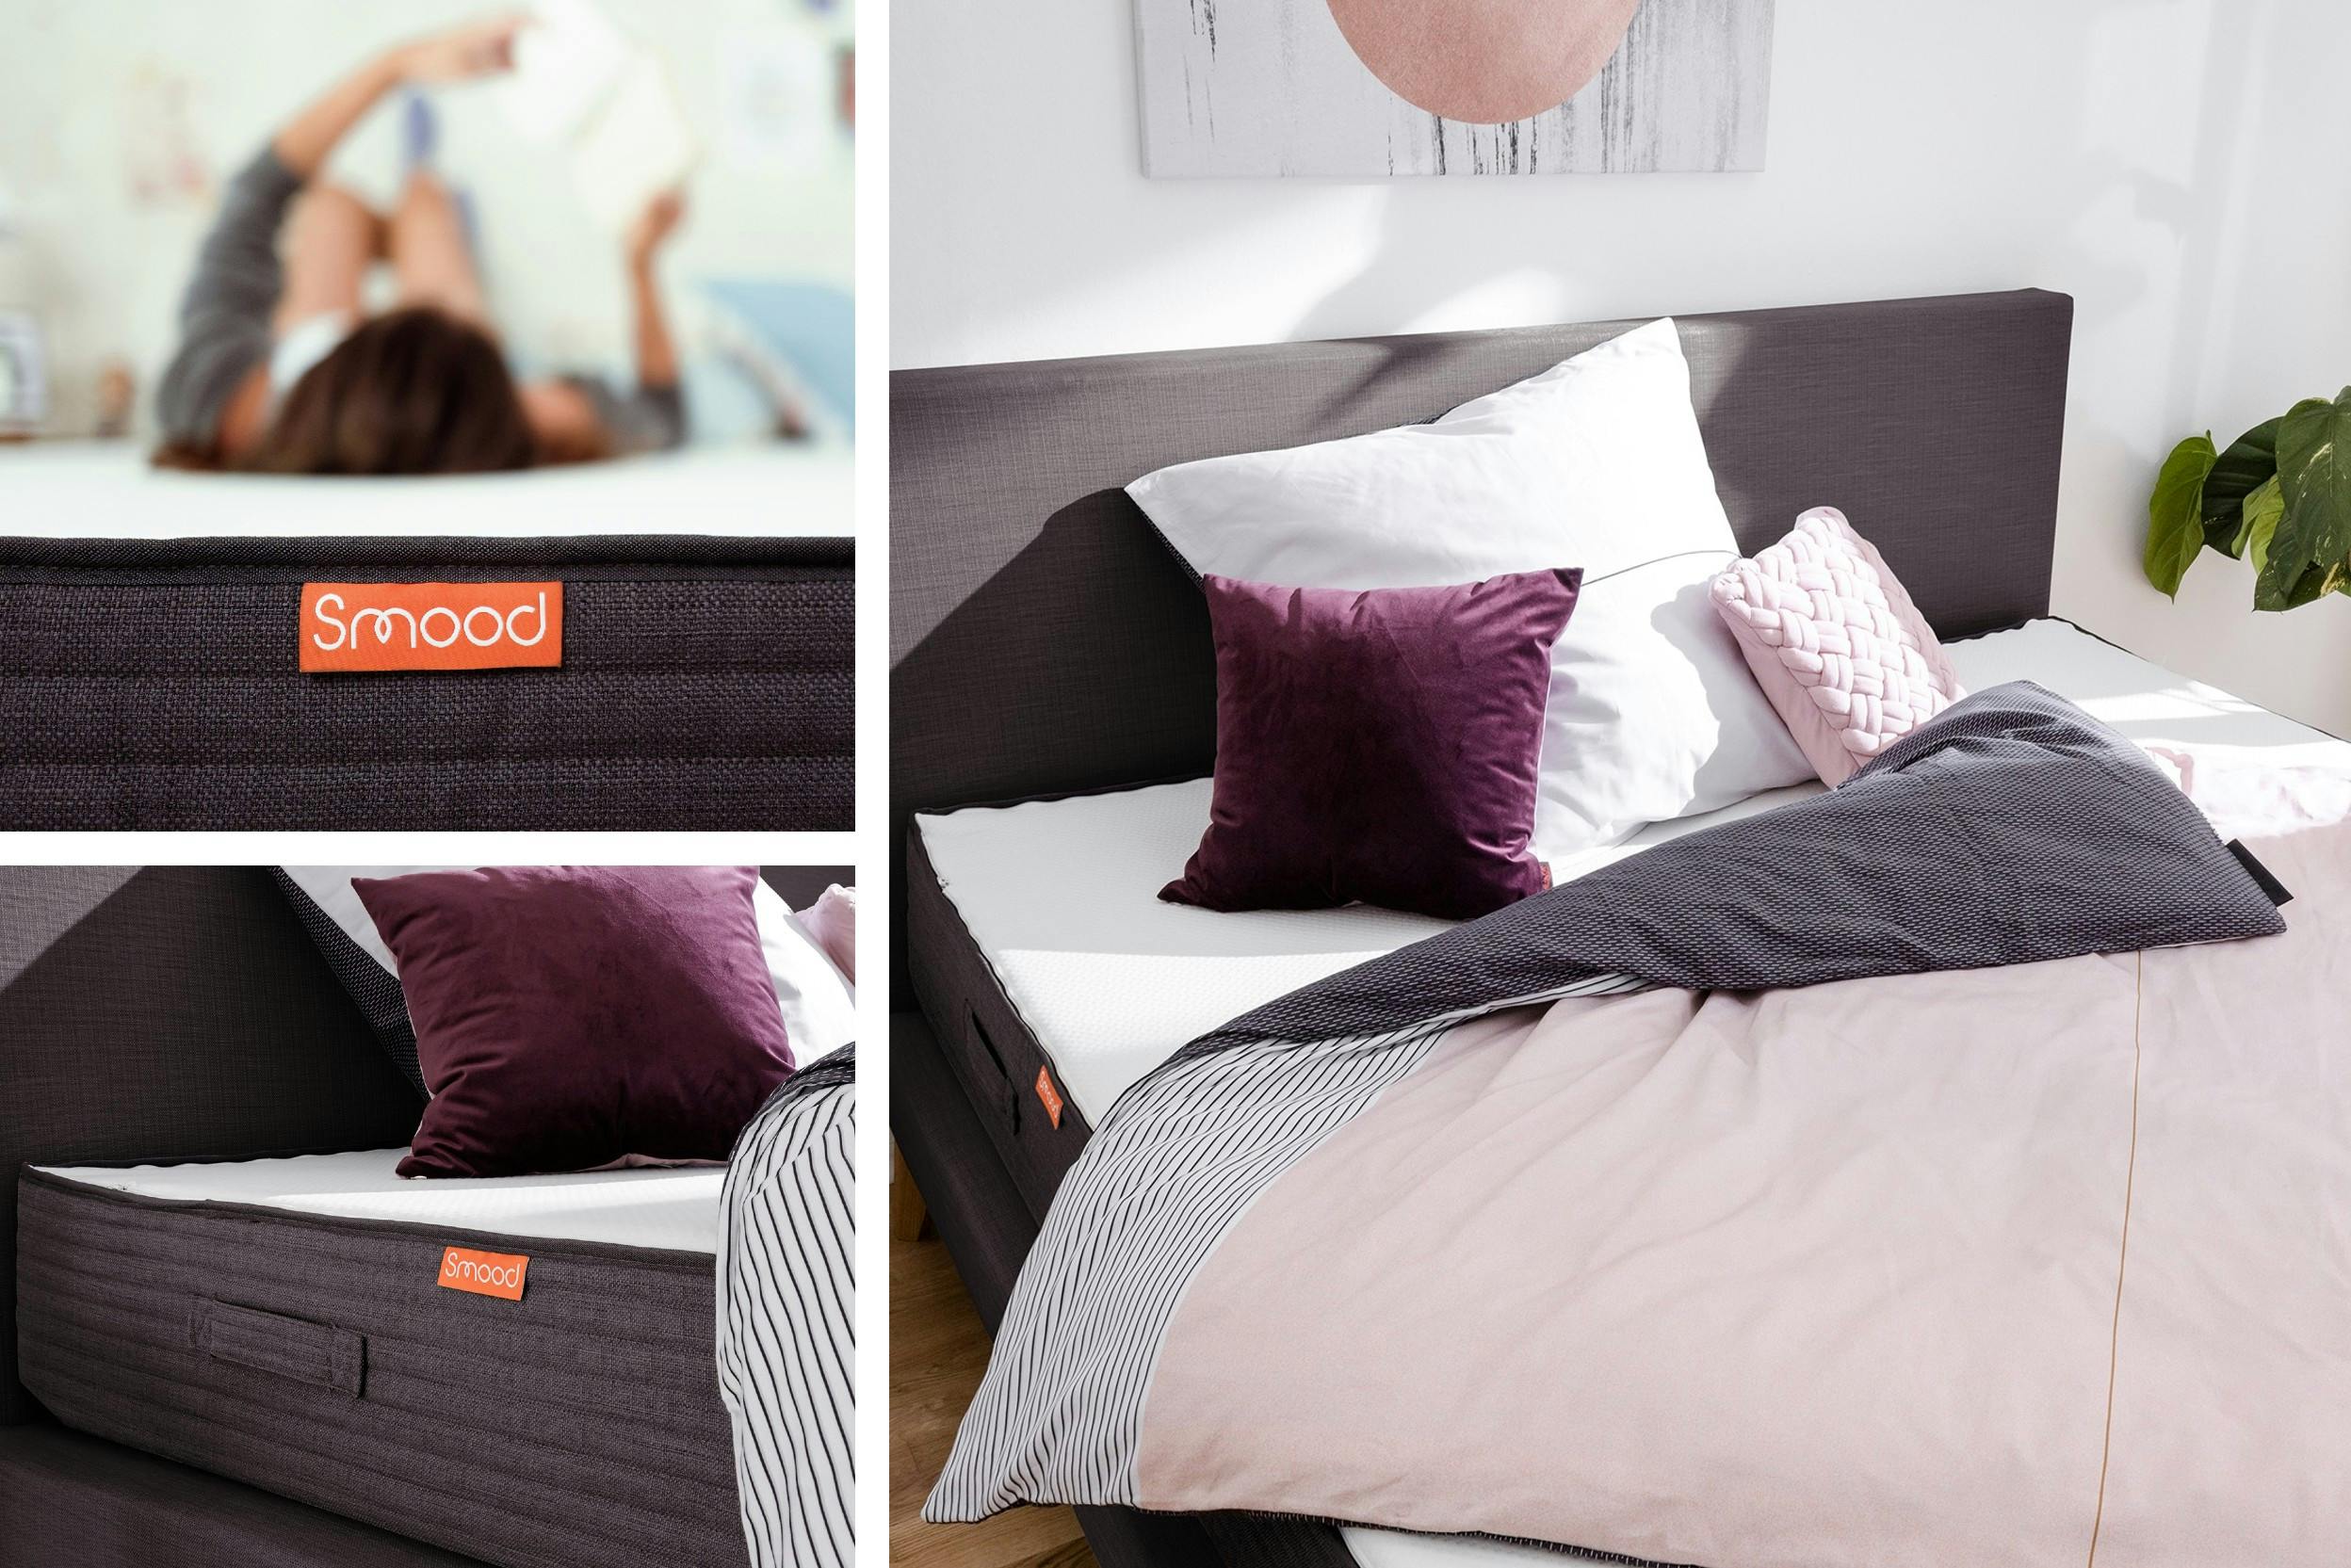 Hochwertige, hohe Matratze mit Frau darauf liegend (links) und Kissen-Decken-Set (rechts). Produktname: Smood (home24).